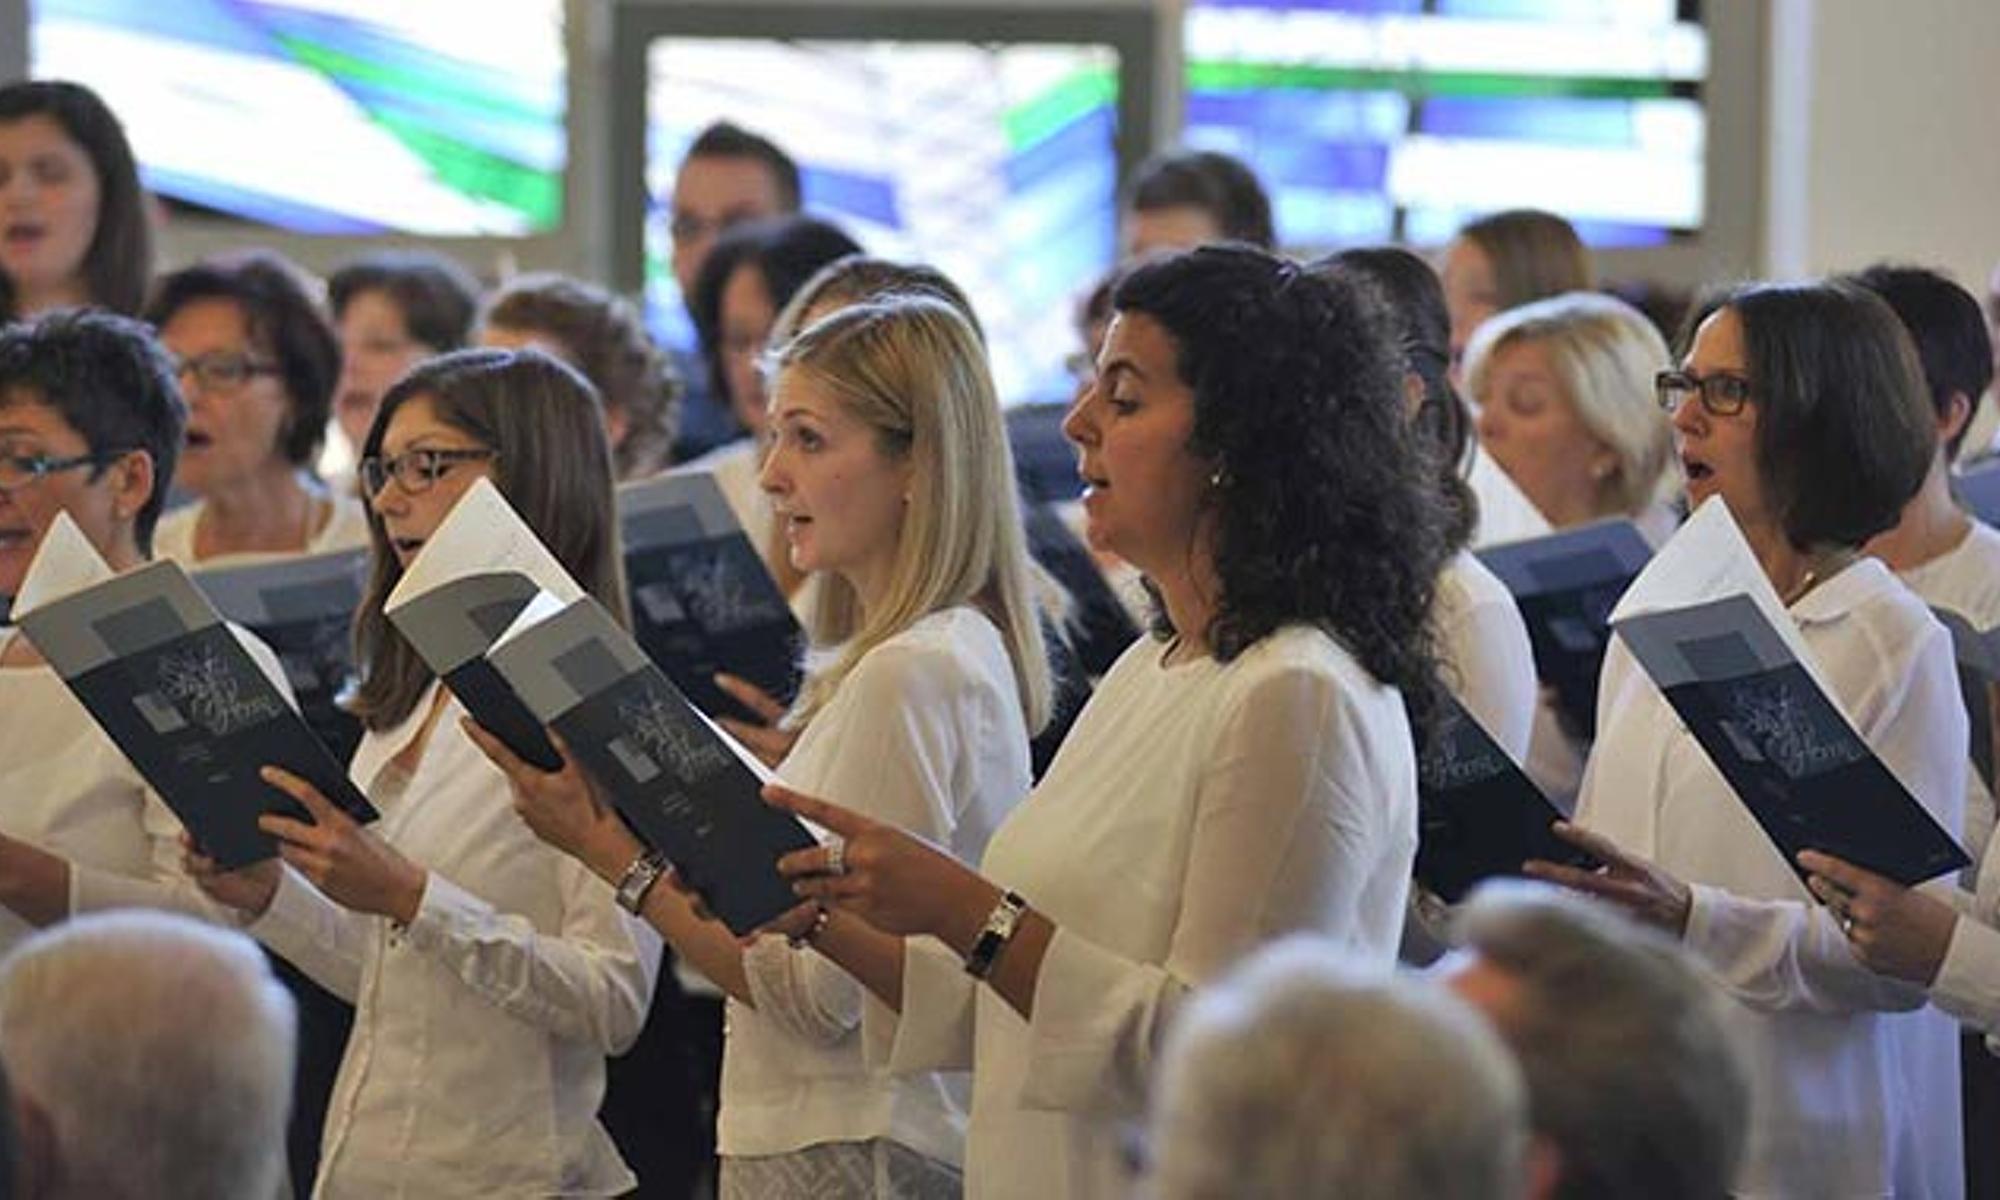 Ein gemischter Chor umrahmte den Gottesdienst musikalisch